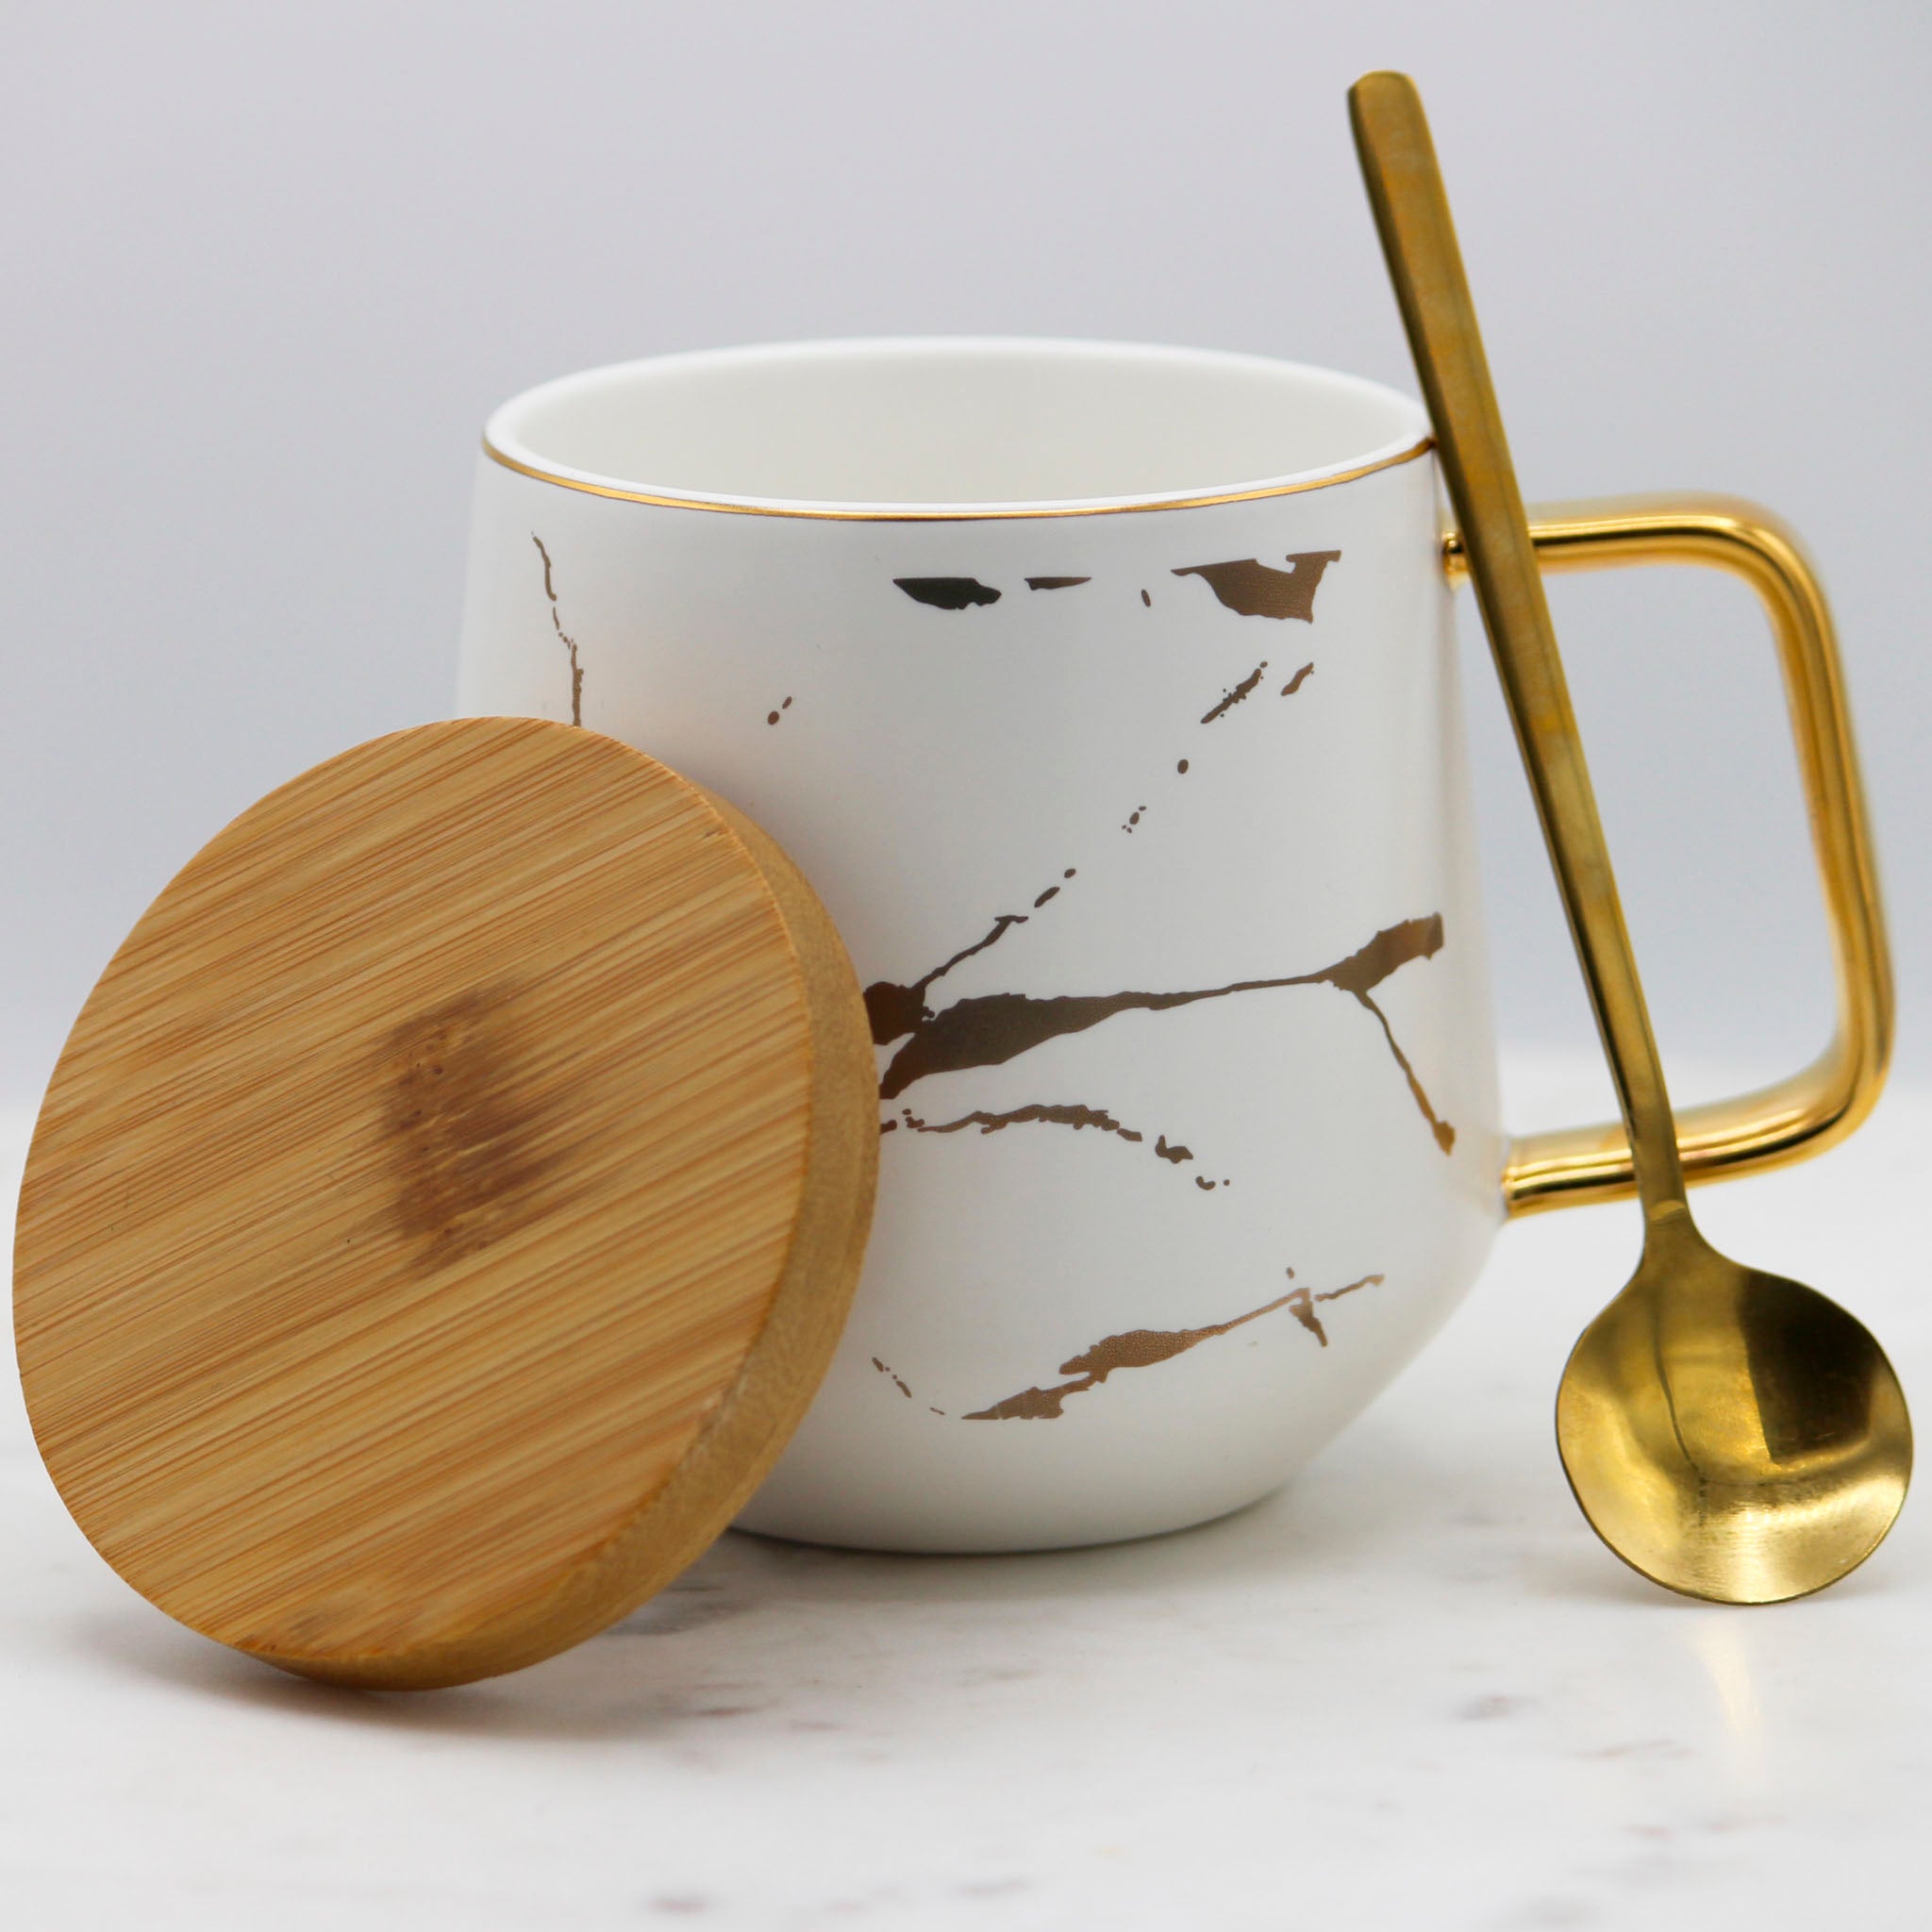 Glazed Porcelain Tea Mug with a Bamboo lid and a Spoon